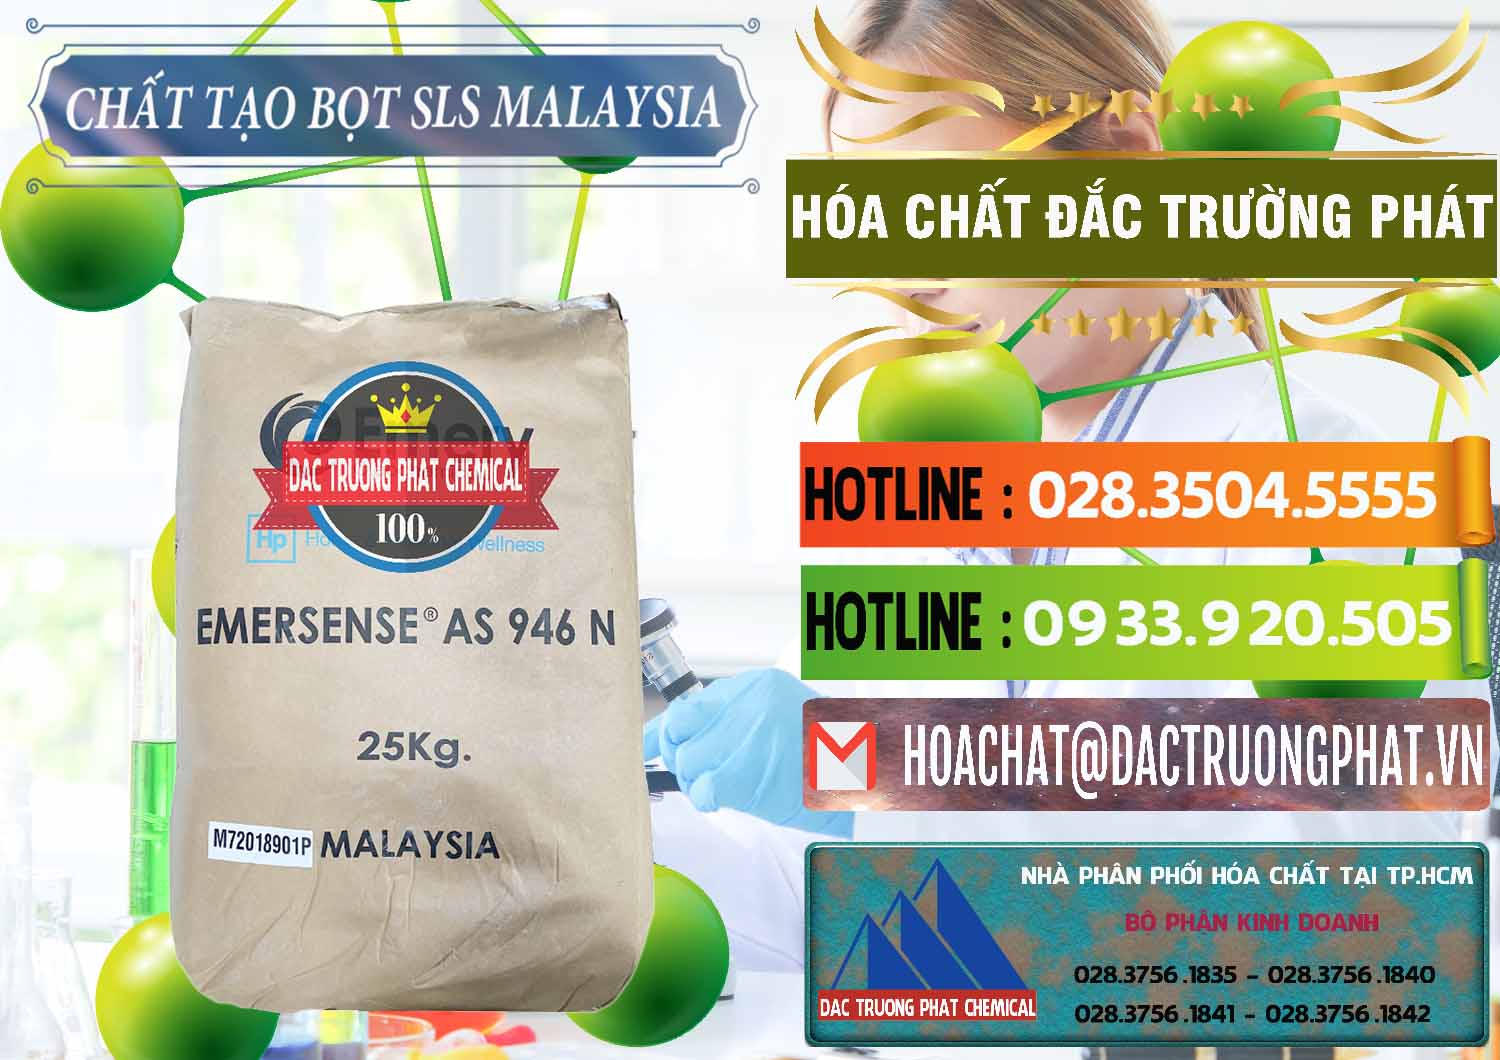 Chuyên bán - cung ứng Chất Tạo Bọt SLS Emery - Emersense AS 946N Mã Lai Malaysia - 0423 - Công ty chuyên bán và cung cấp hóa chất tại TP.HCM - cungcaphoachat.com.vn